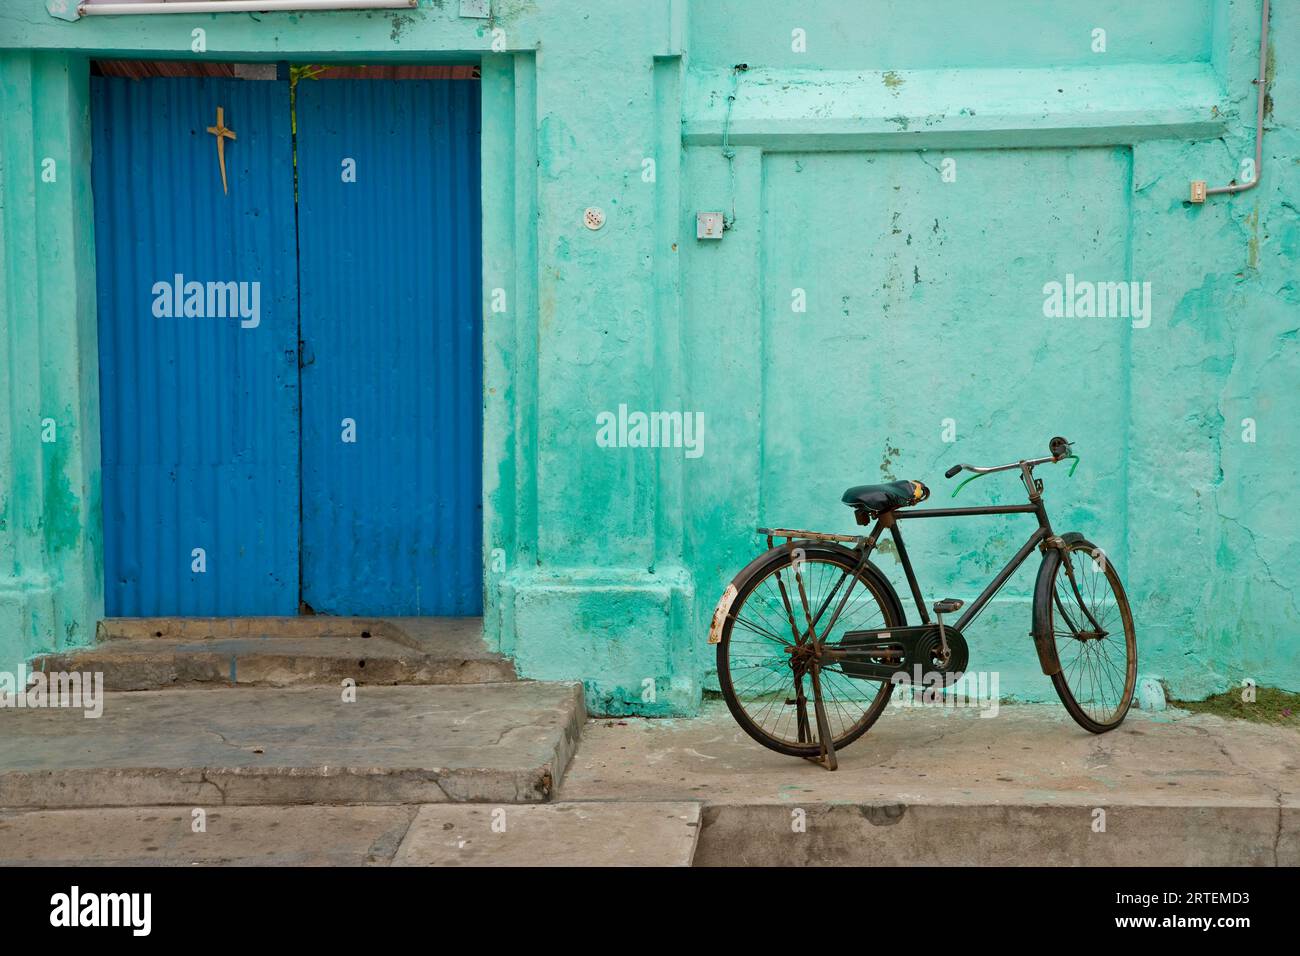 Biciclette parcheggiate fuori da una casa a Pondicherry, l'area francese dell'India meridionale; Pondicherry, India Foto Stock